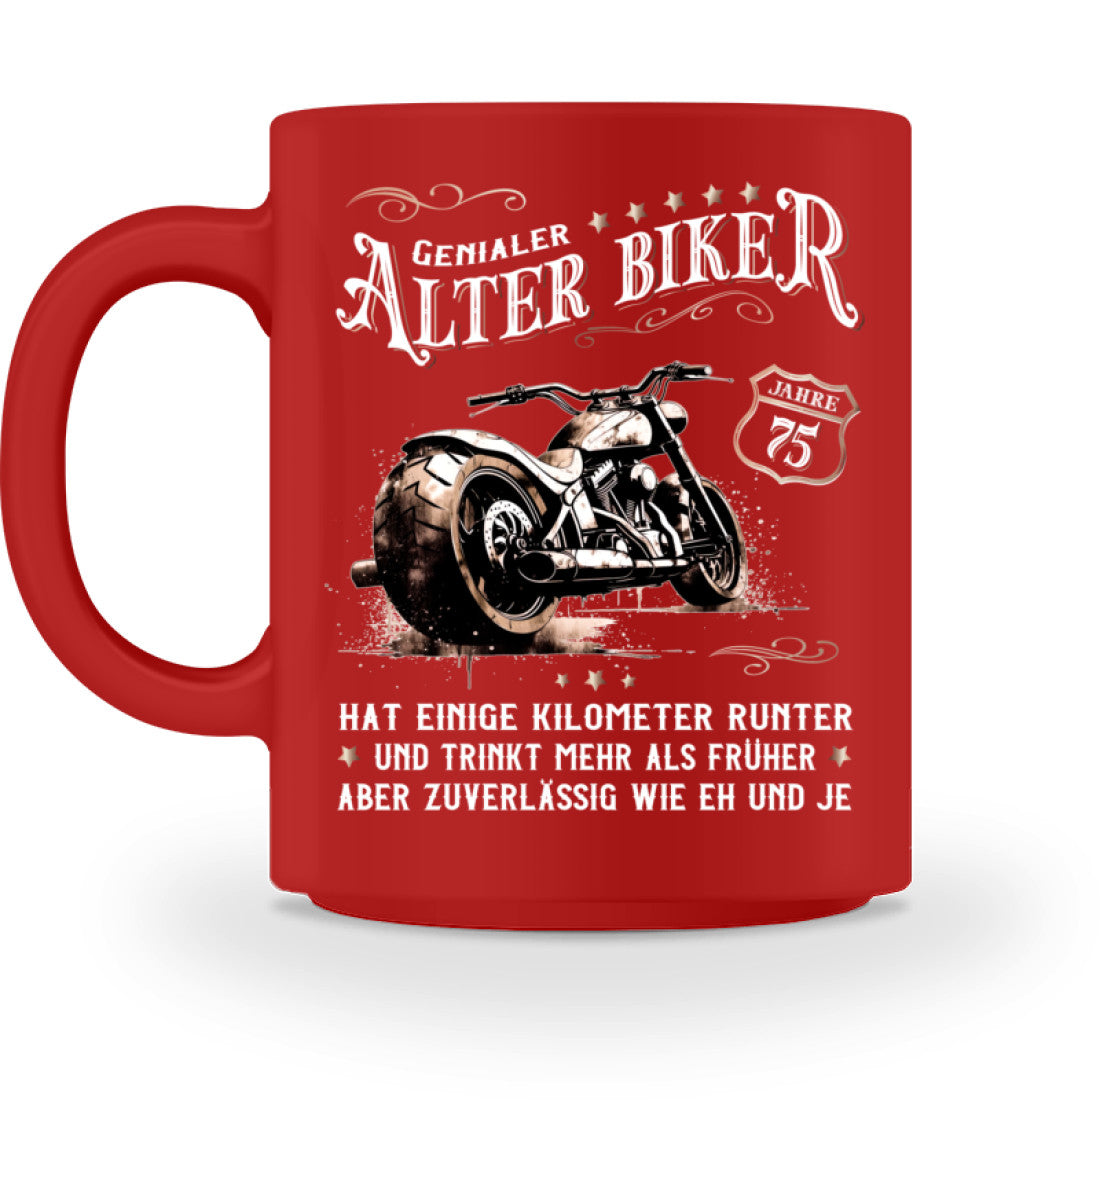 Eine Biker Geburtstags-Tasse für Motorradfahrer, von Wingbikers, mit dem beidseitigen Aufdruck, Alter Biker - 75 Jahre - Einige Kilometer runter, trinkt mehr - aber zuverlässig wie eh und je, in rot.